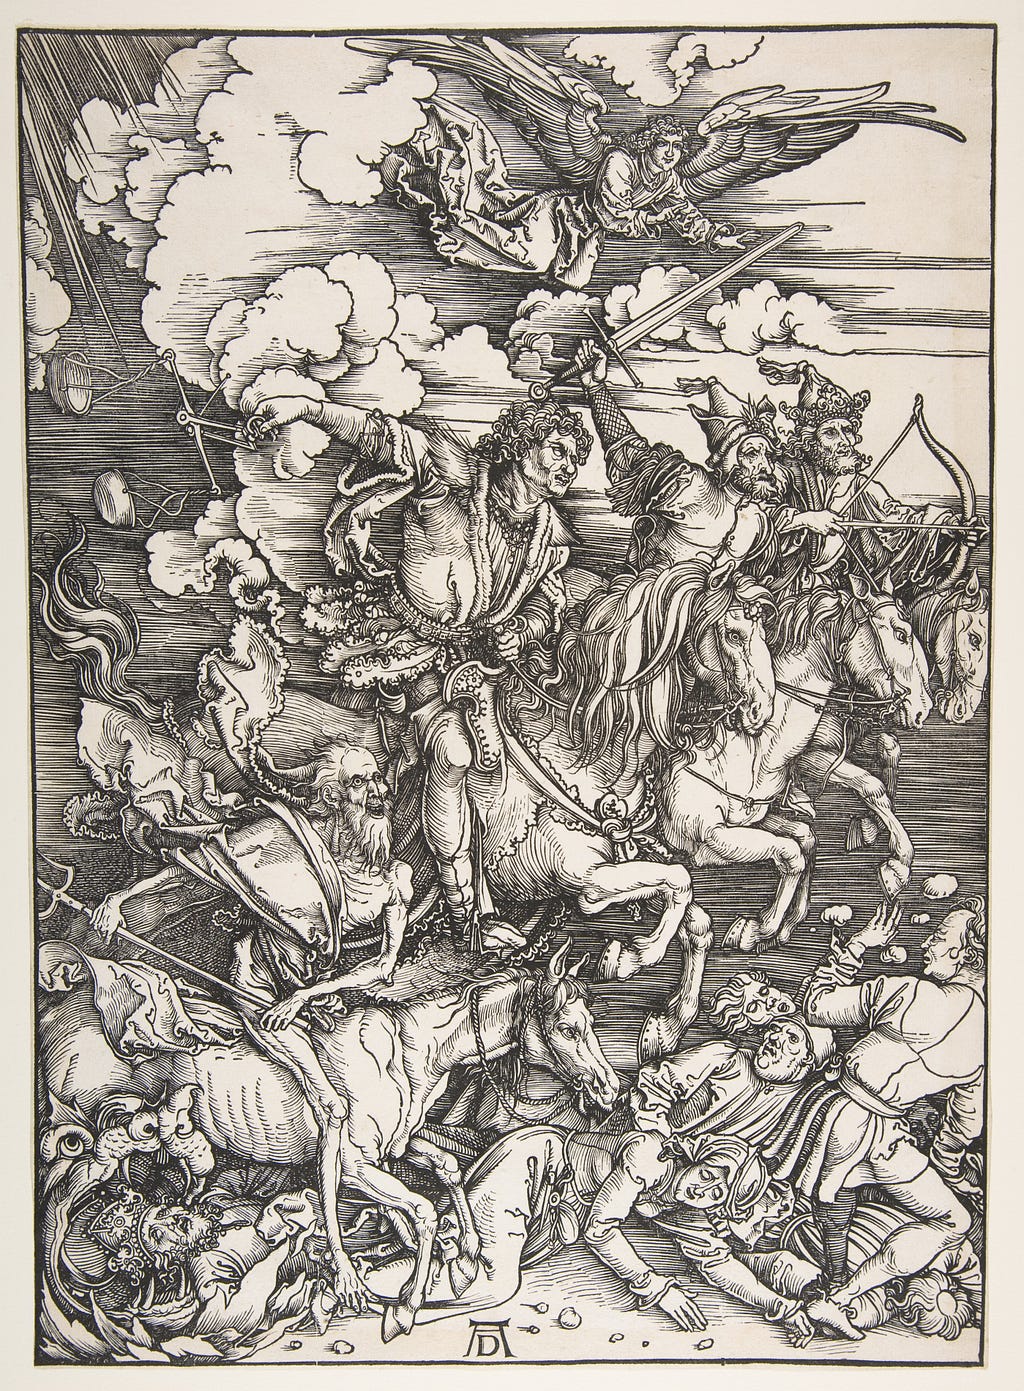 The Four Horsemen, from “The Apocalypse” — by Albrecht Dürer 1498